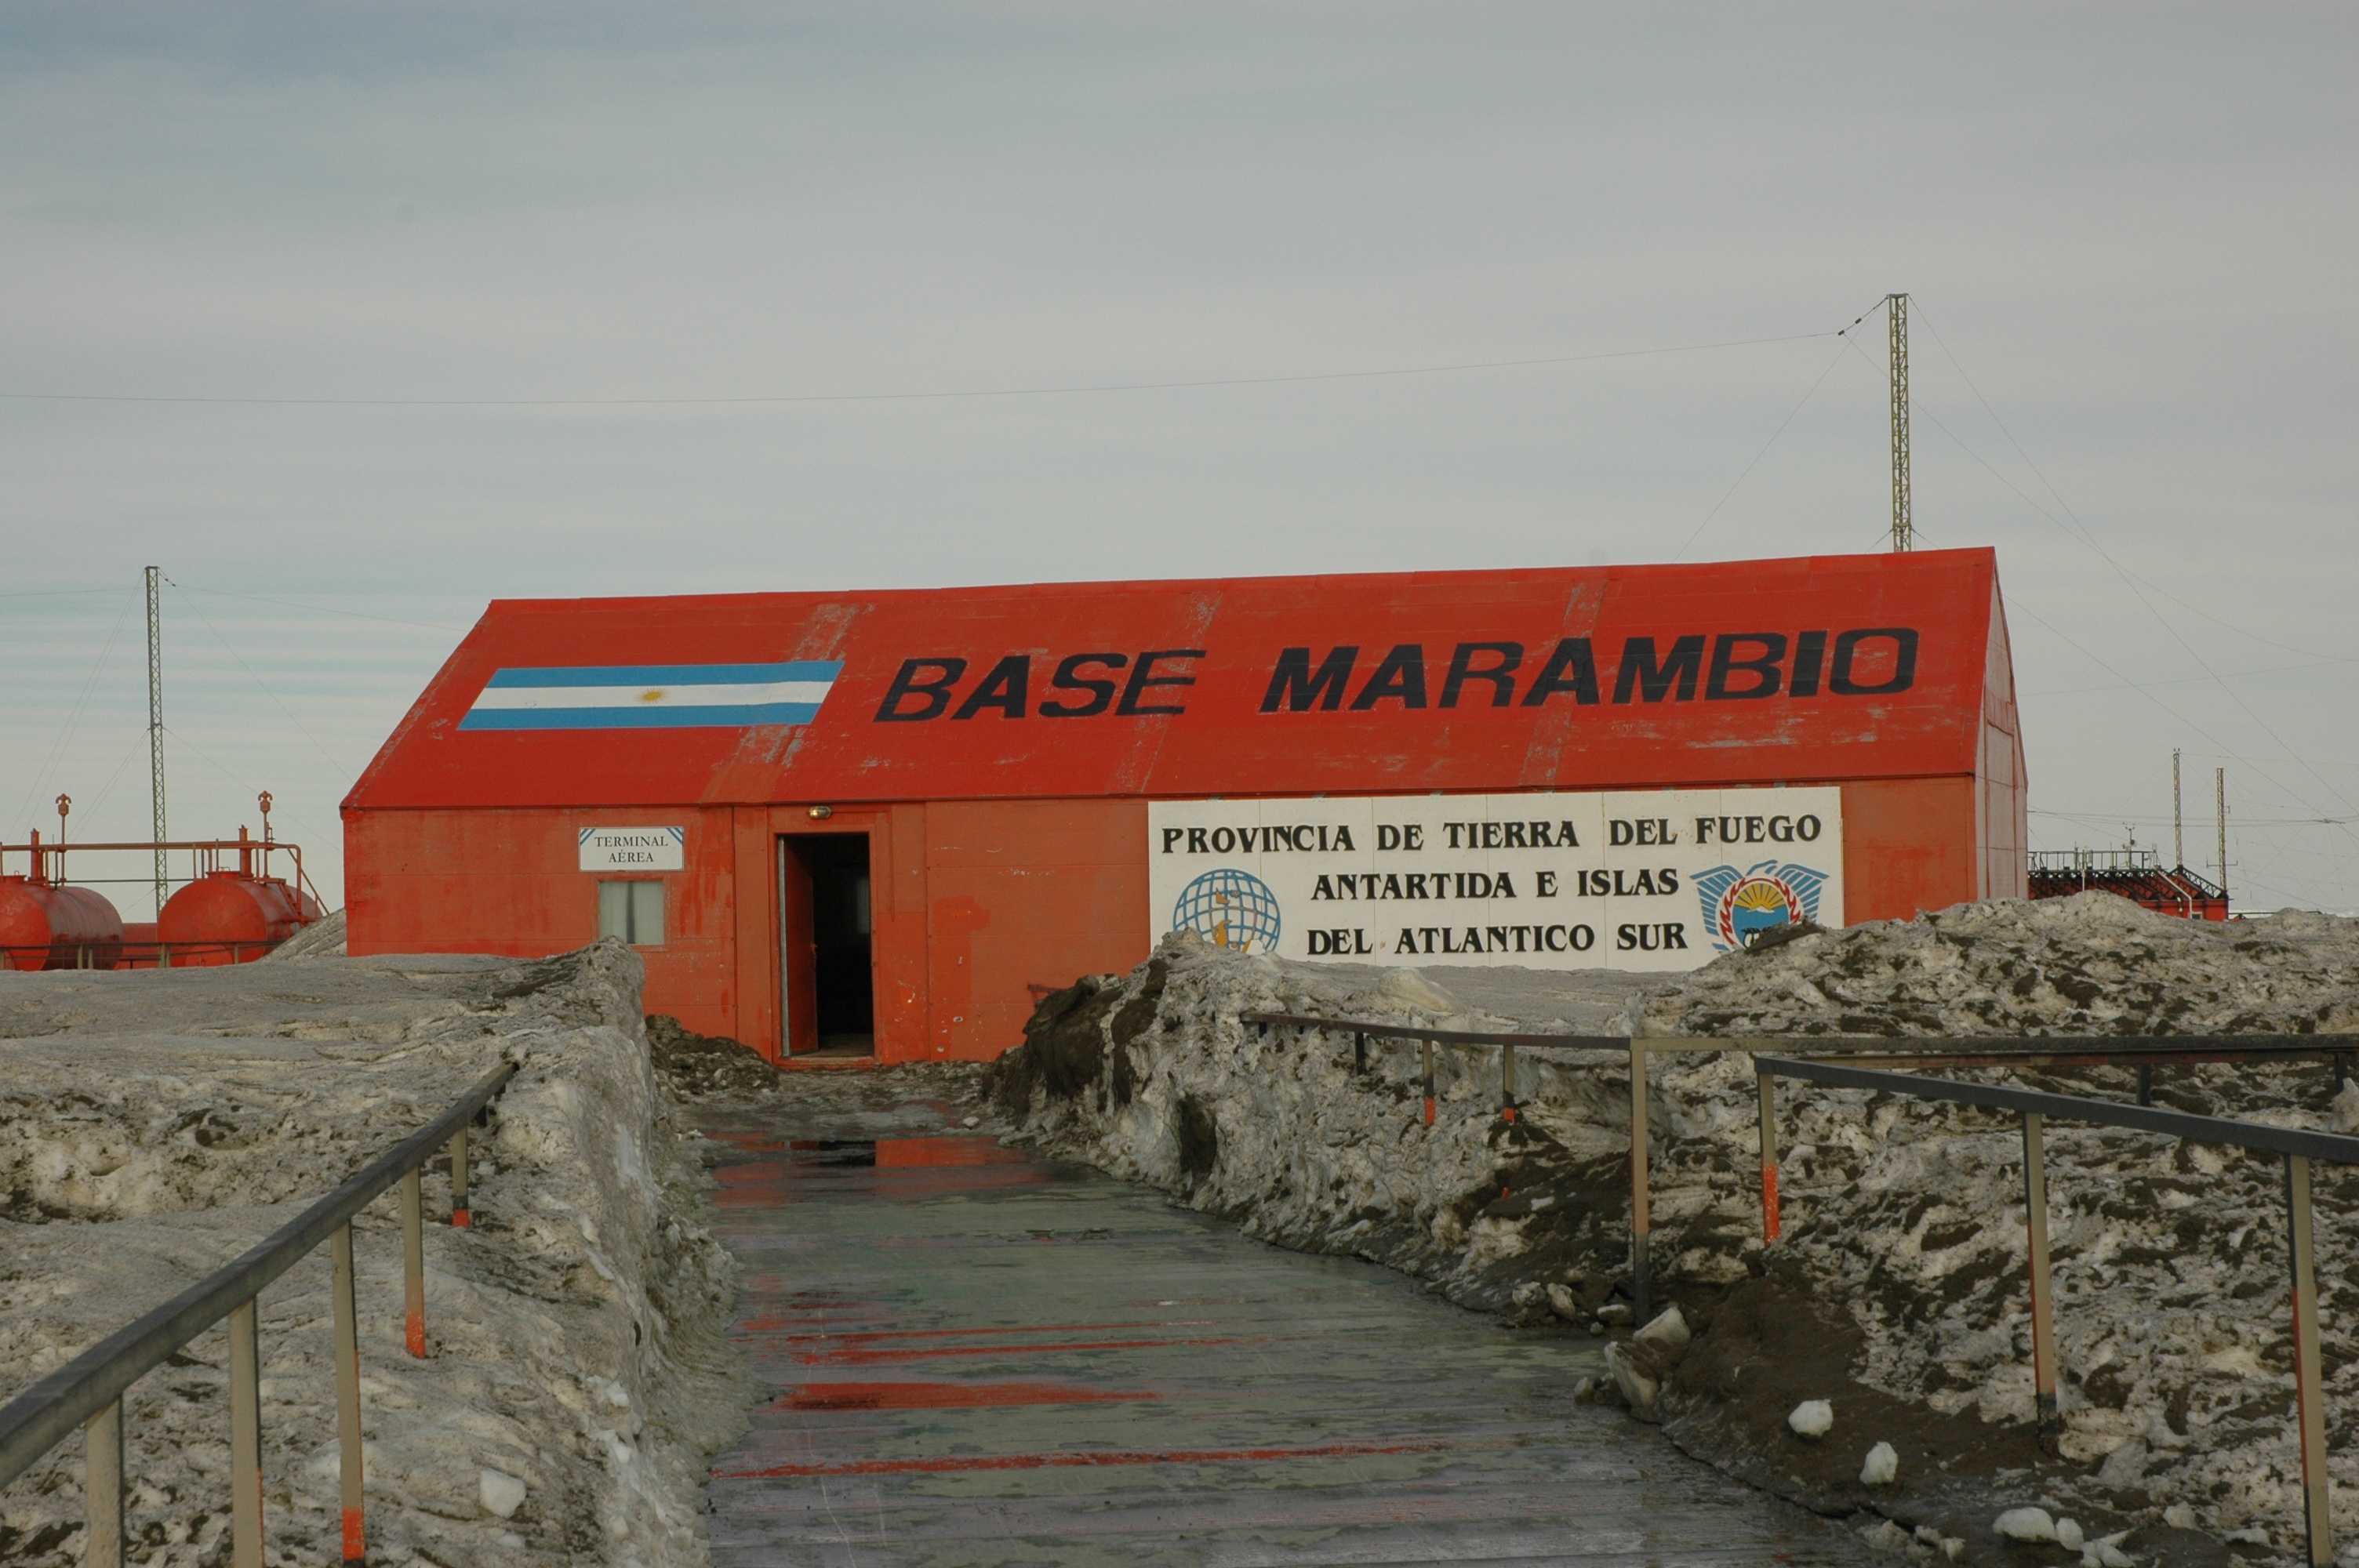 La Base Marambio está ubicada en el Sector Antártico Argentino y pertenece a la provincia de Tierra del Fuego, Malvinas e Islas del Atlántico Sur 